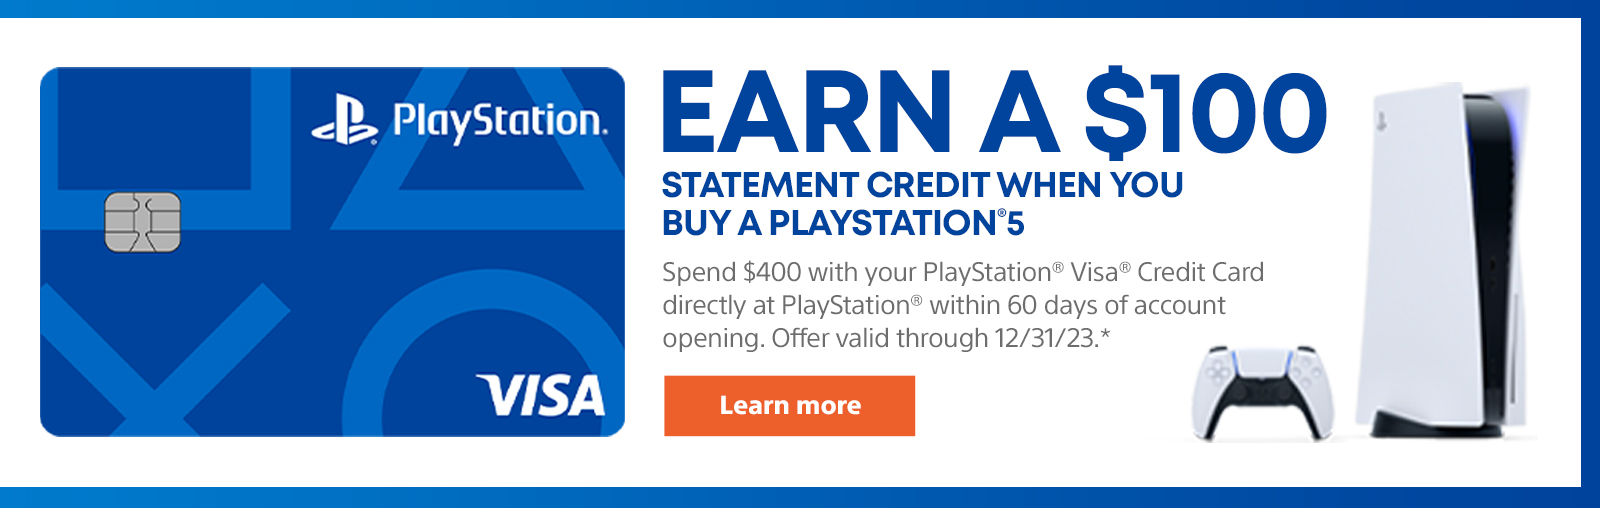 اربح رصيدًا بقيمة 100 دولار عند شراء PlayStation 5. استخدم بطاقة PlayStation Visa Credit لإنفاق 400 دولار مباشرة في PlayStation خلال 60 يومًا من فتح الحساب. عرض صالح من خلال 12/31/23